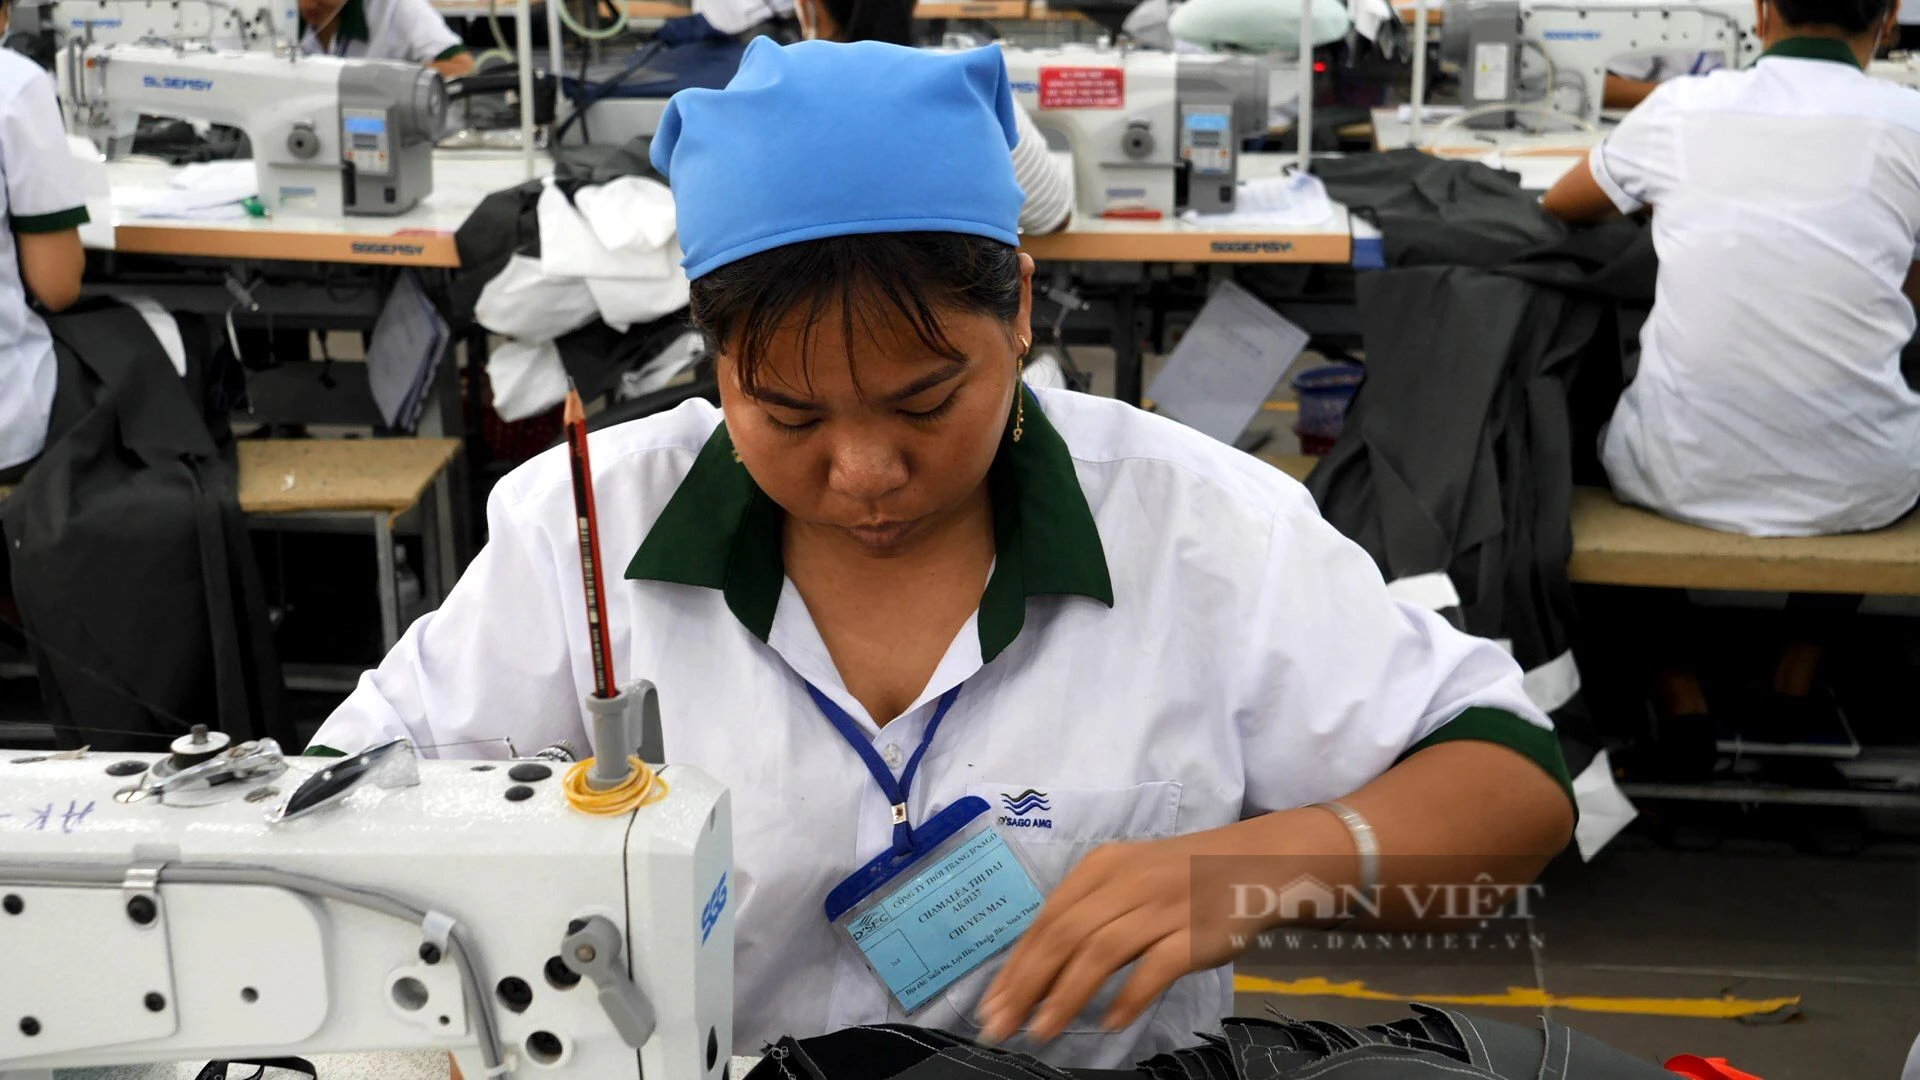 Đào tạo nghề giúp giảm nghèo hiệu quả ở huyện Thuận Bắc tỉnh Ninh Thuận - Ảnh 4.